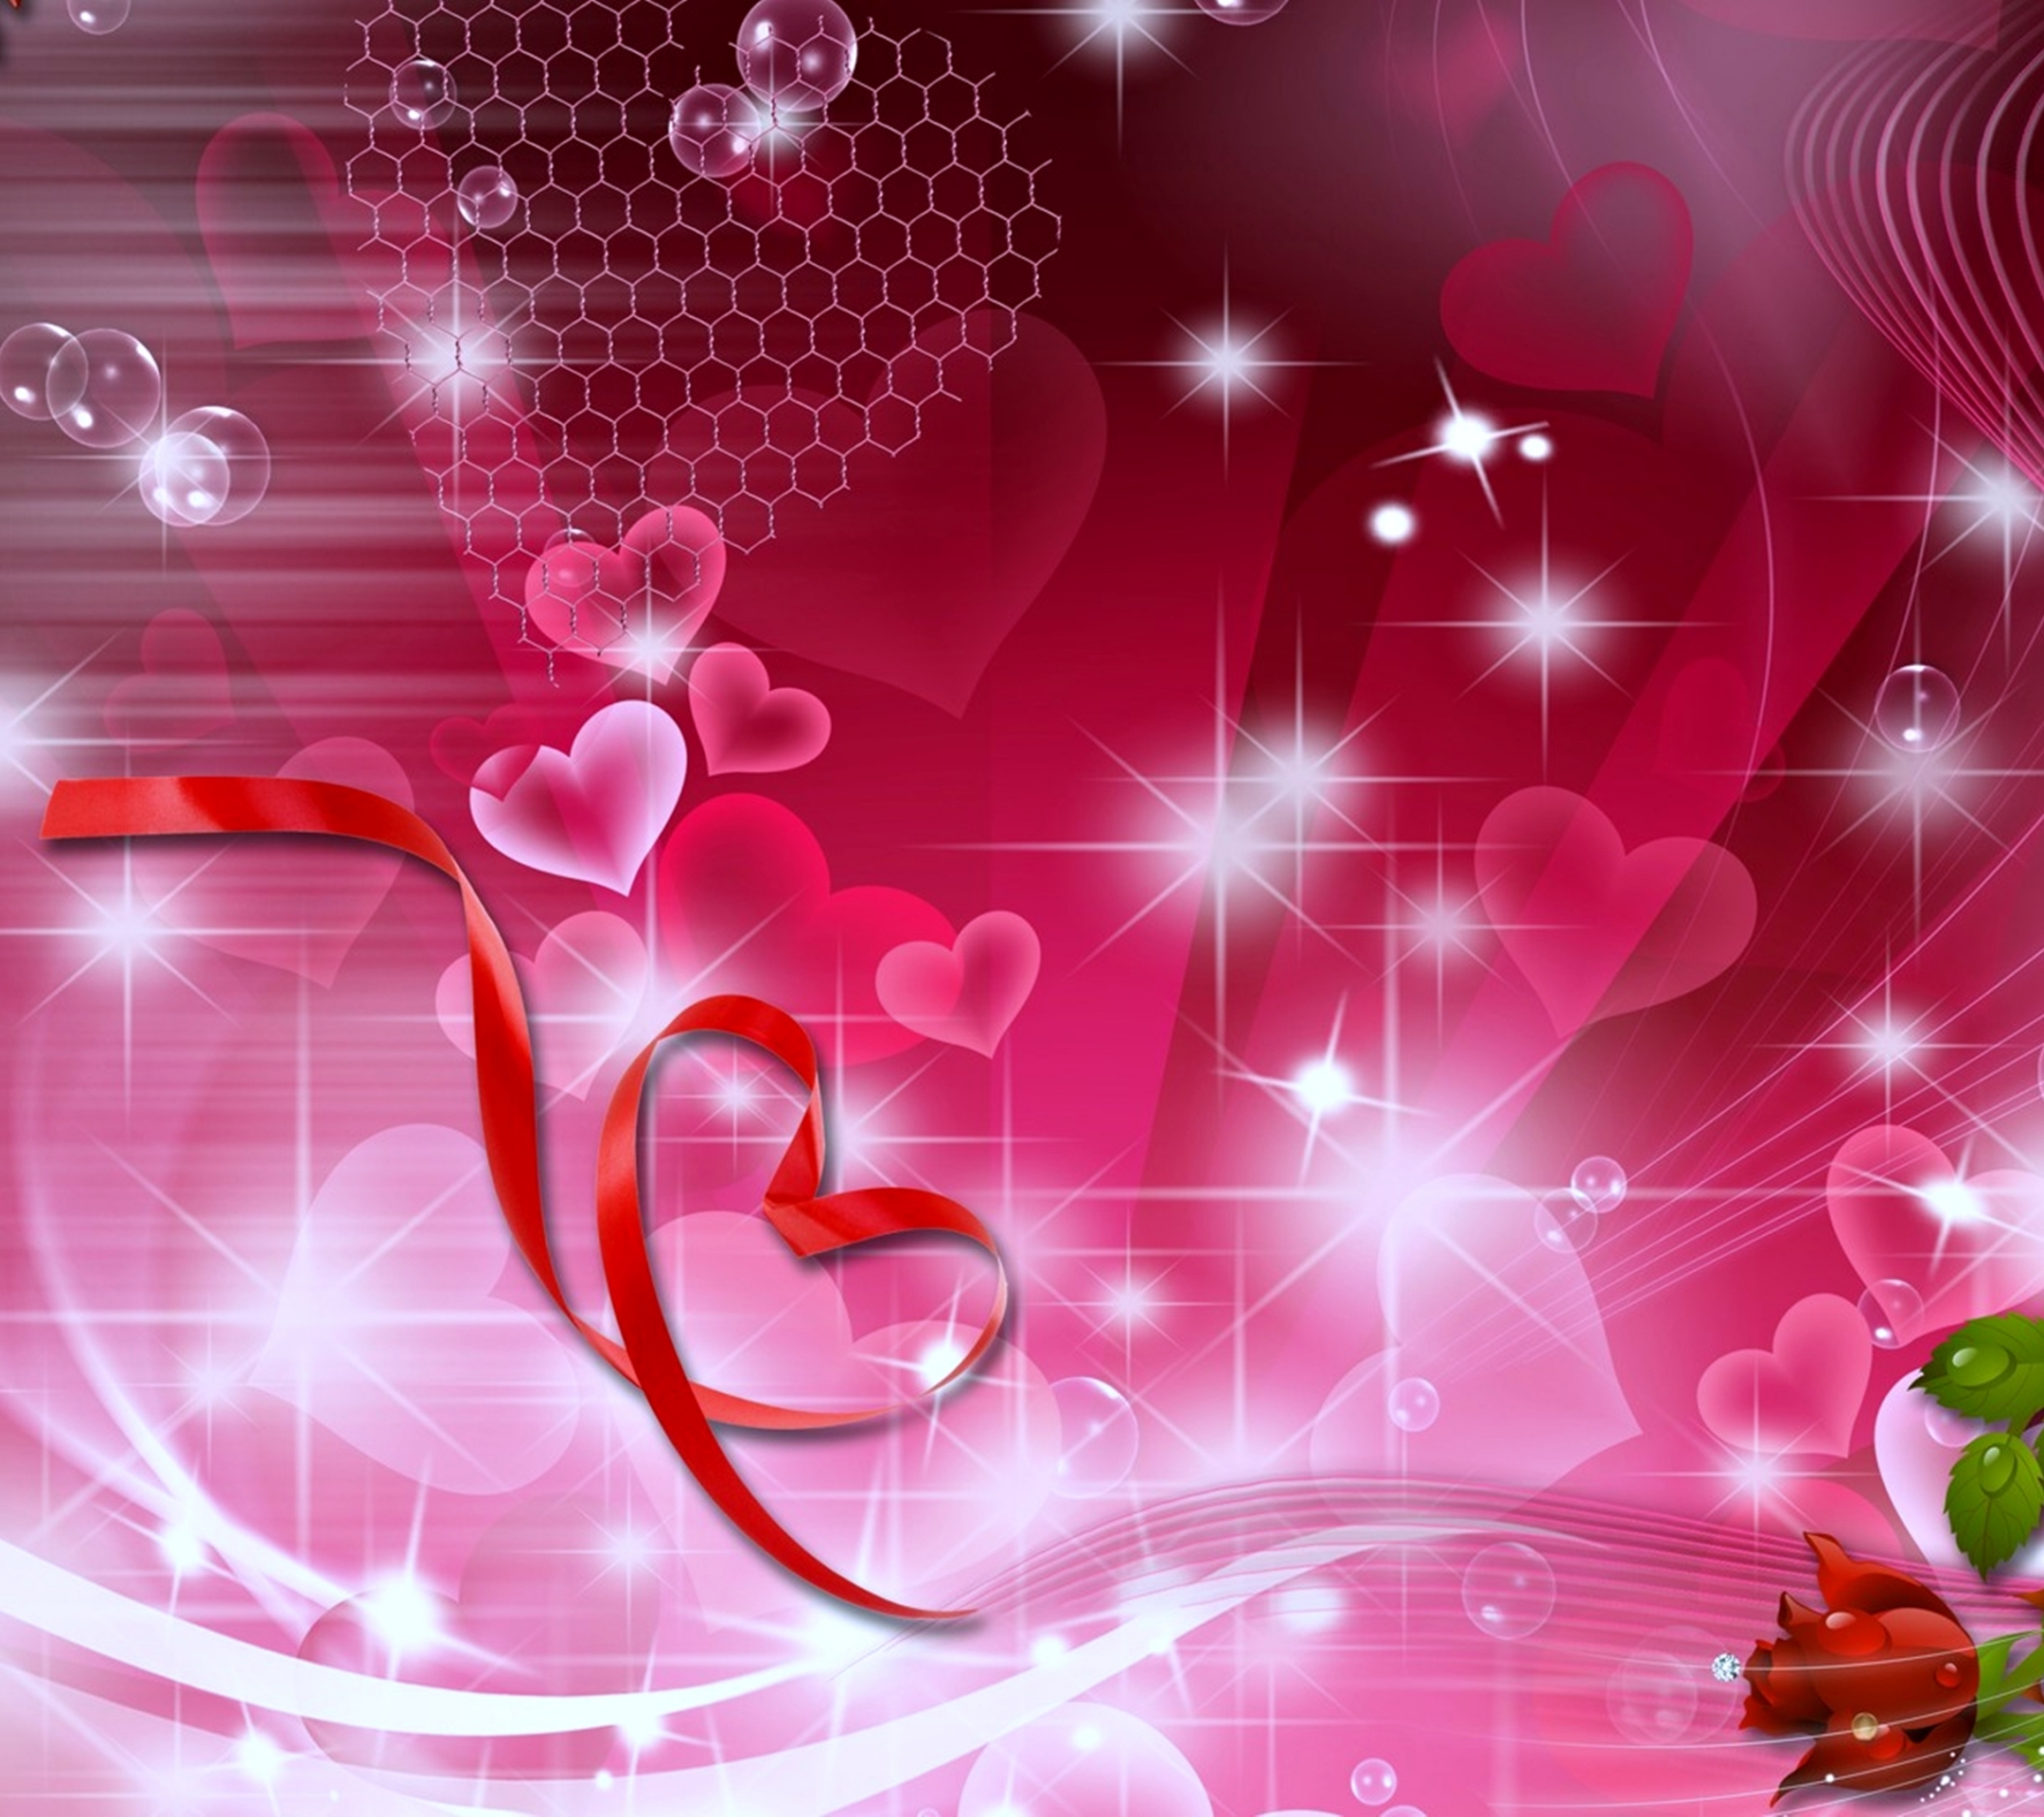 Скачать обои бесплатно Любовь, Роза, Сердце, Художественные, Романтический картинка на рабочий стол ПК